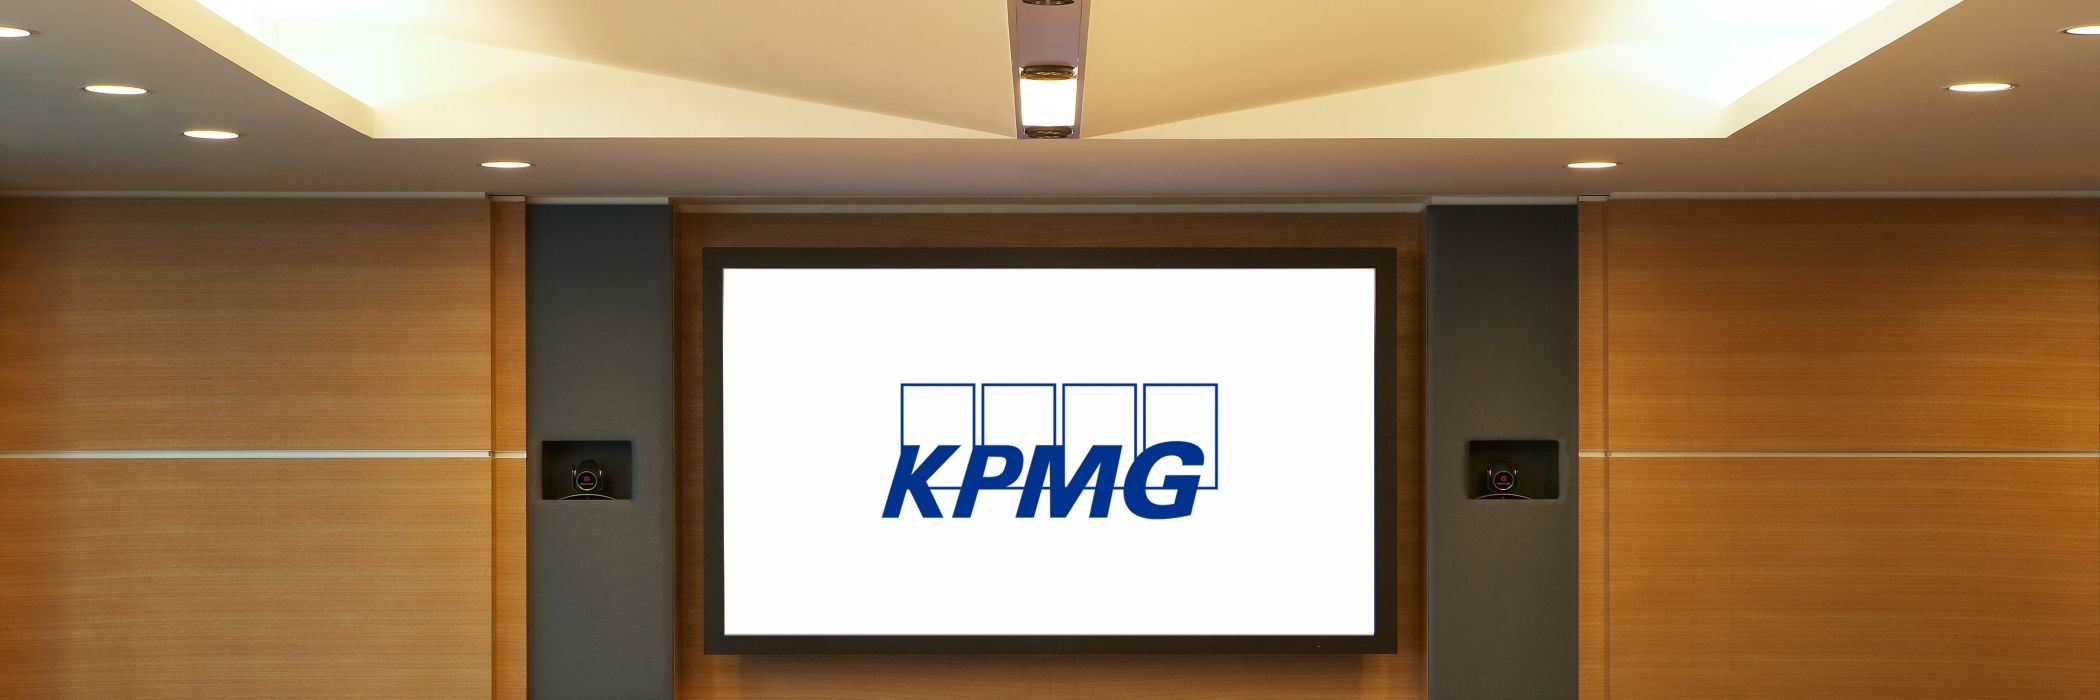 KPMG Office 